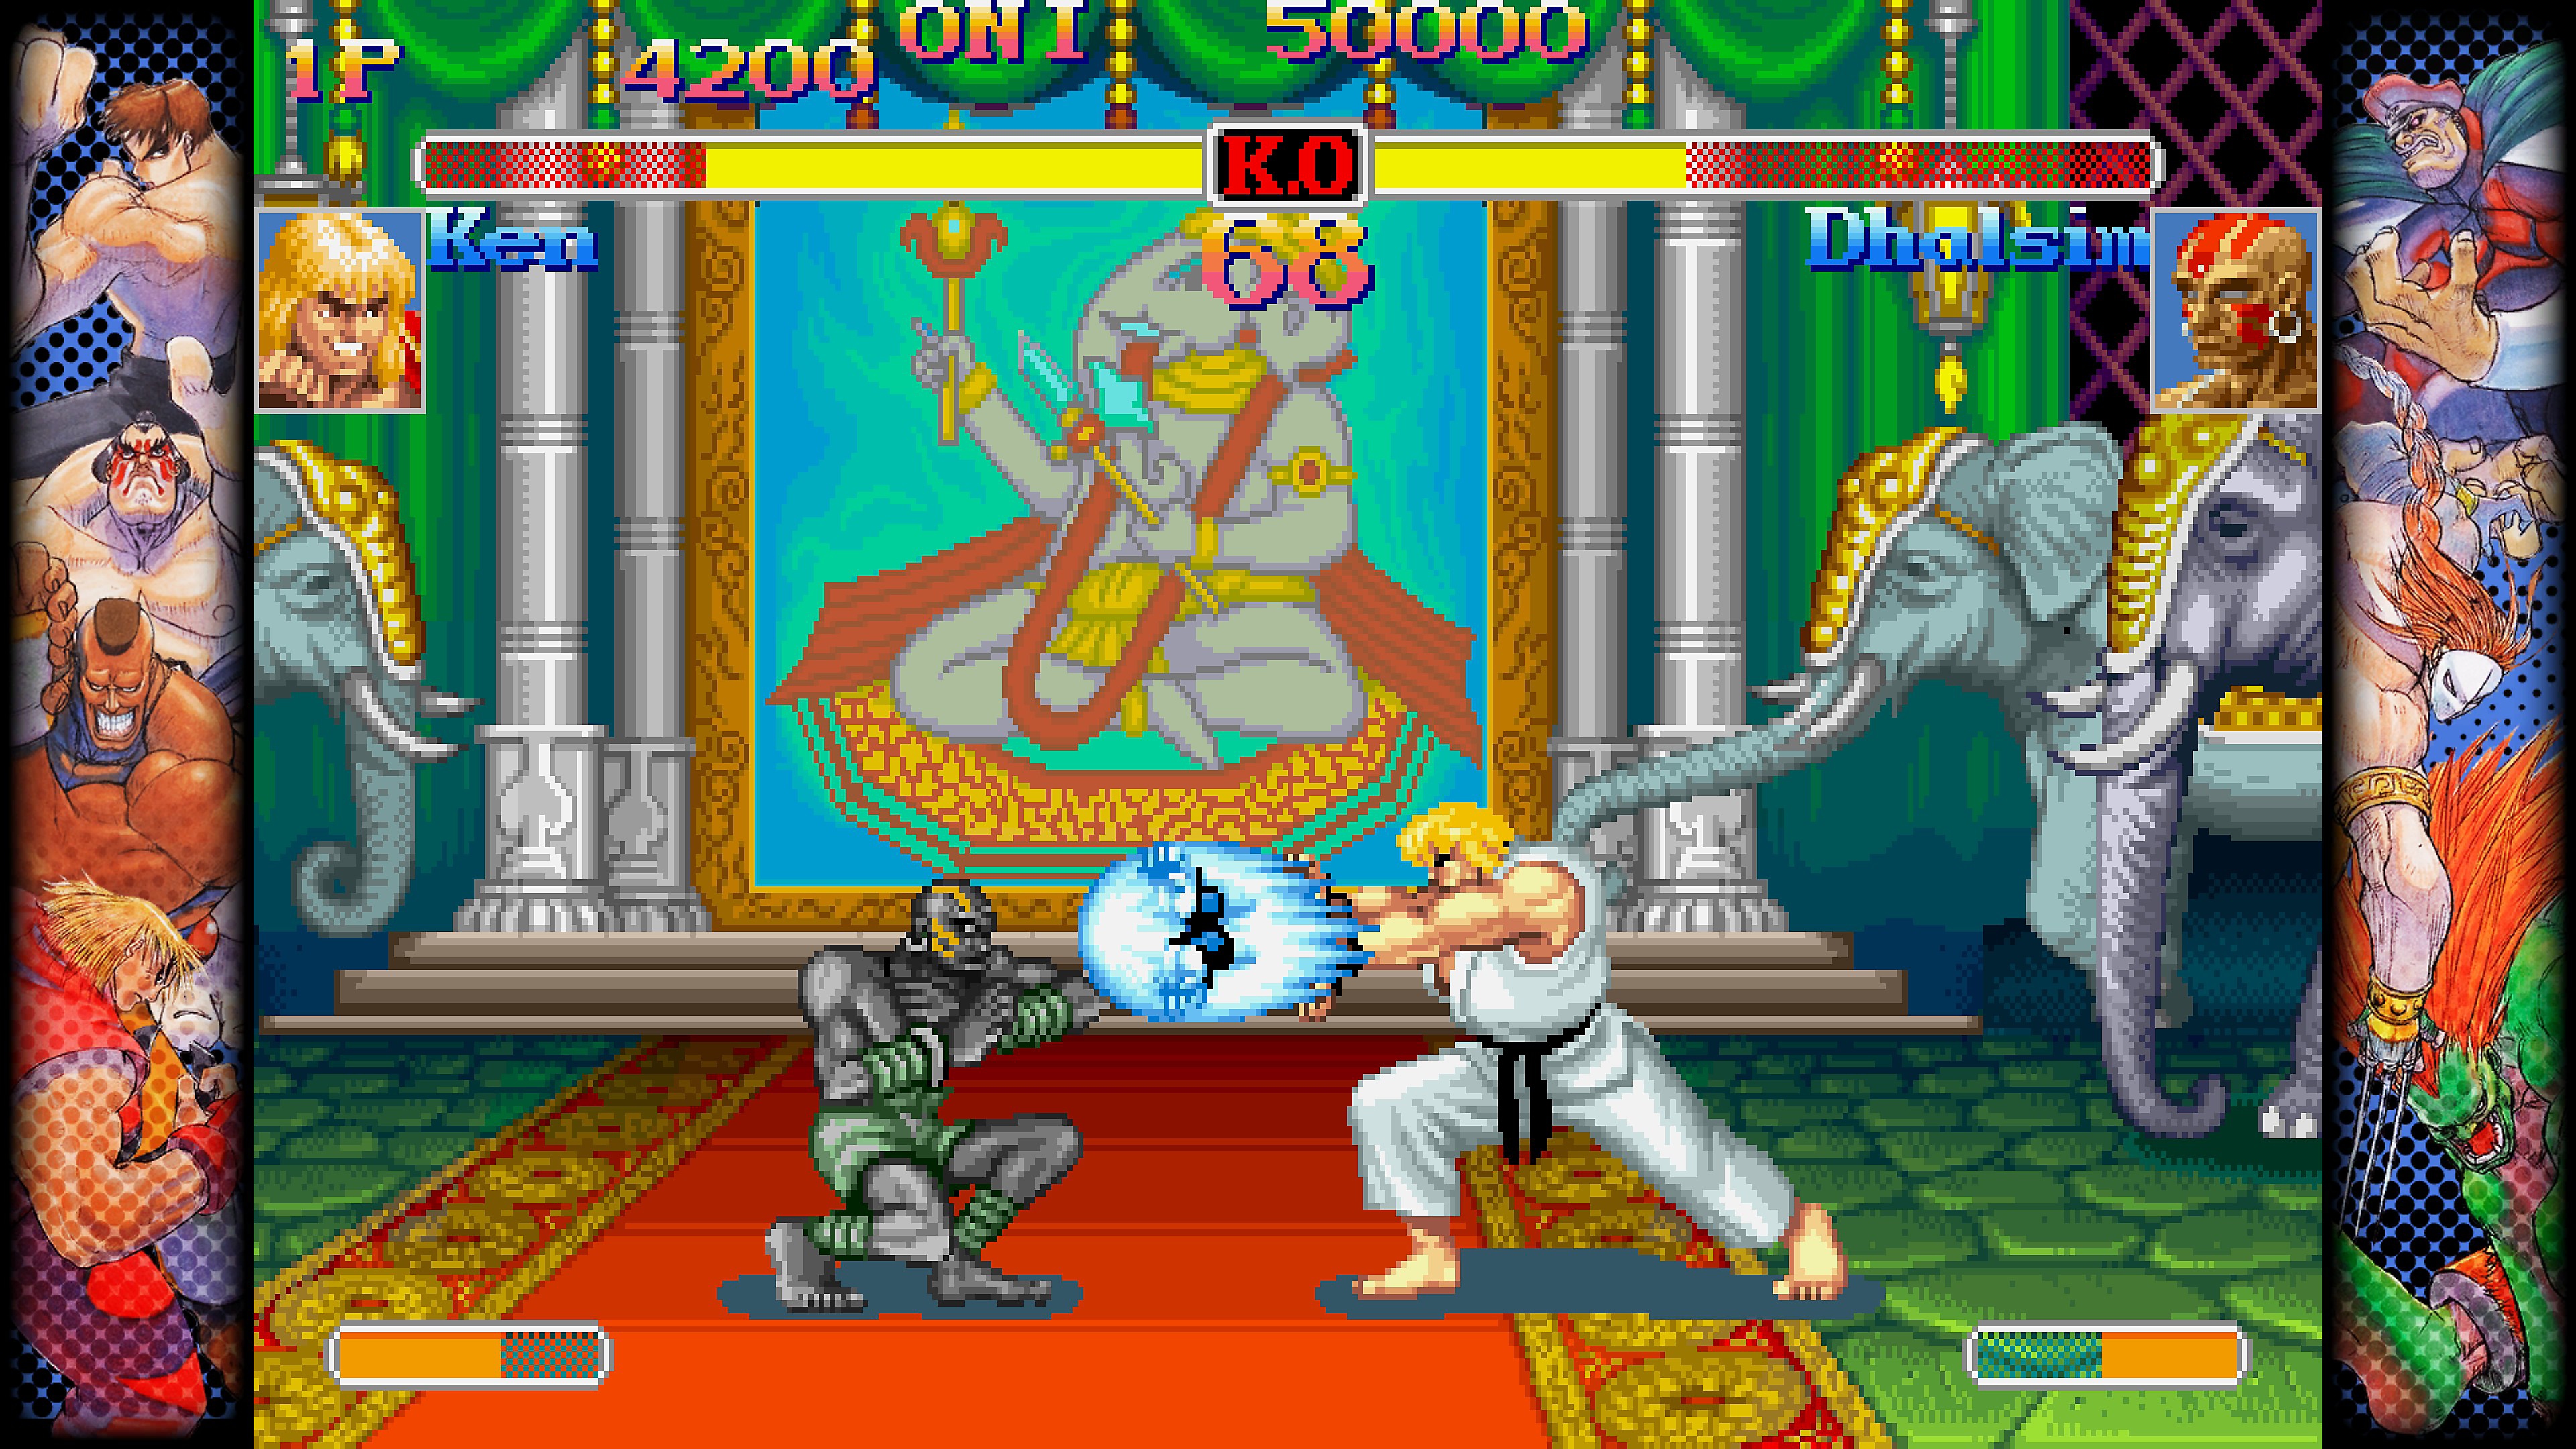 Skærmbillede til Capcom-kampsamling, som viser en kamp mellem to figurer